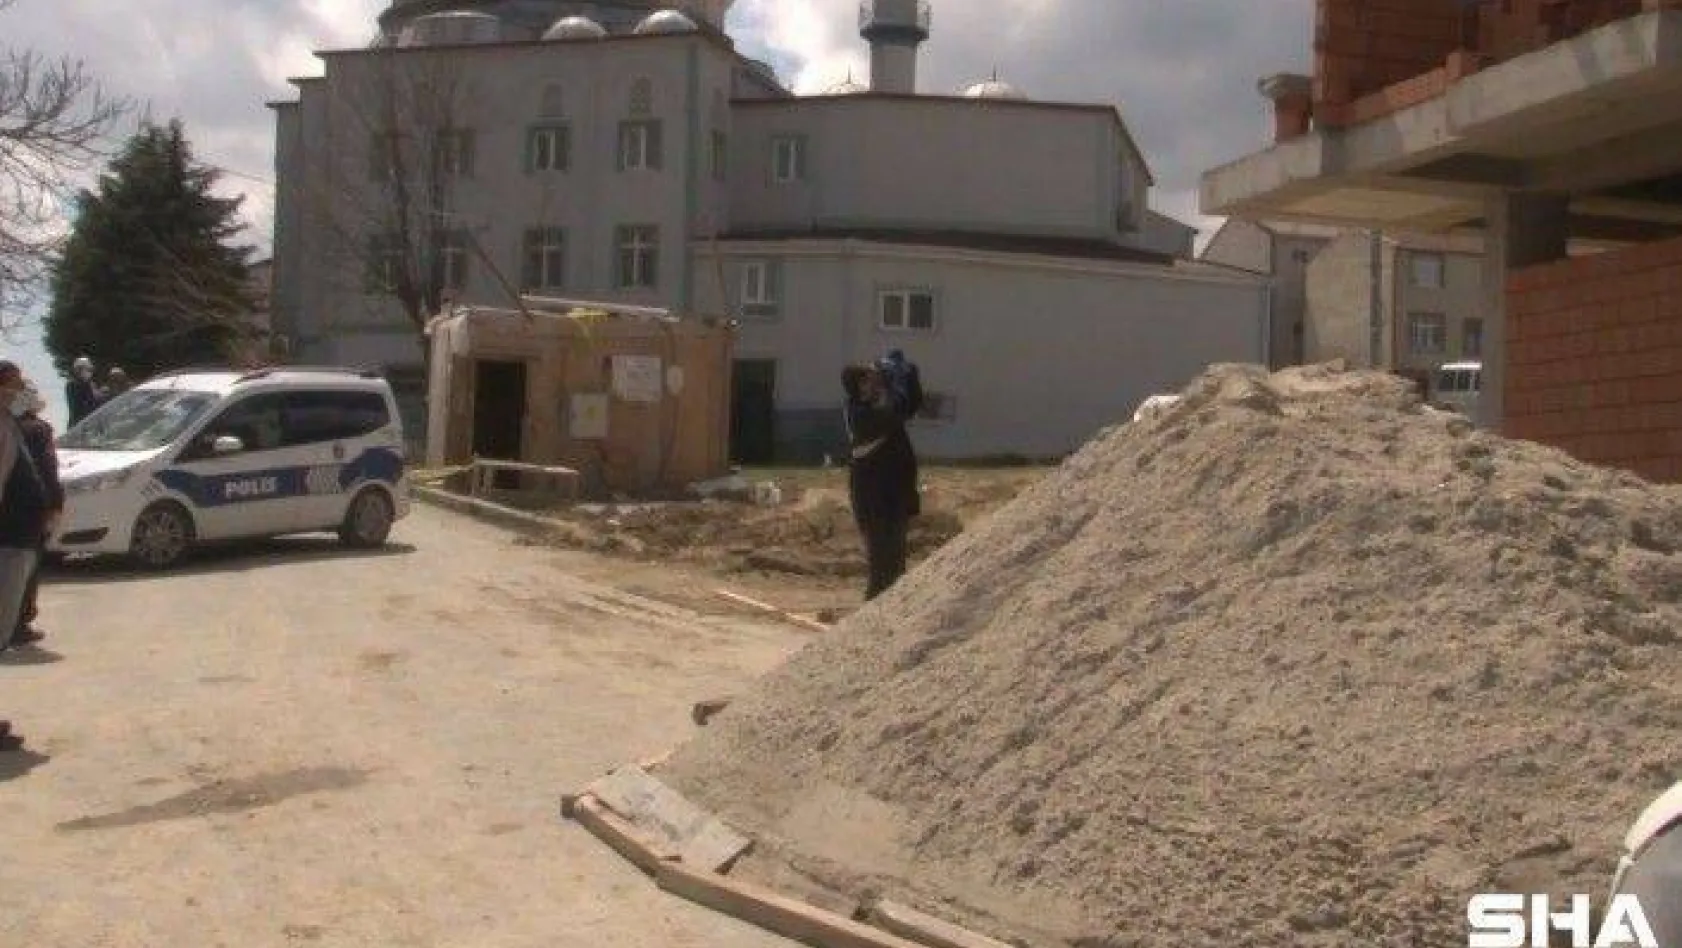 Arnavutköy'de çalıştığı inşaattan düşen yabancı uyruklu işçi öldü